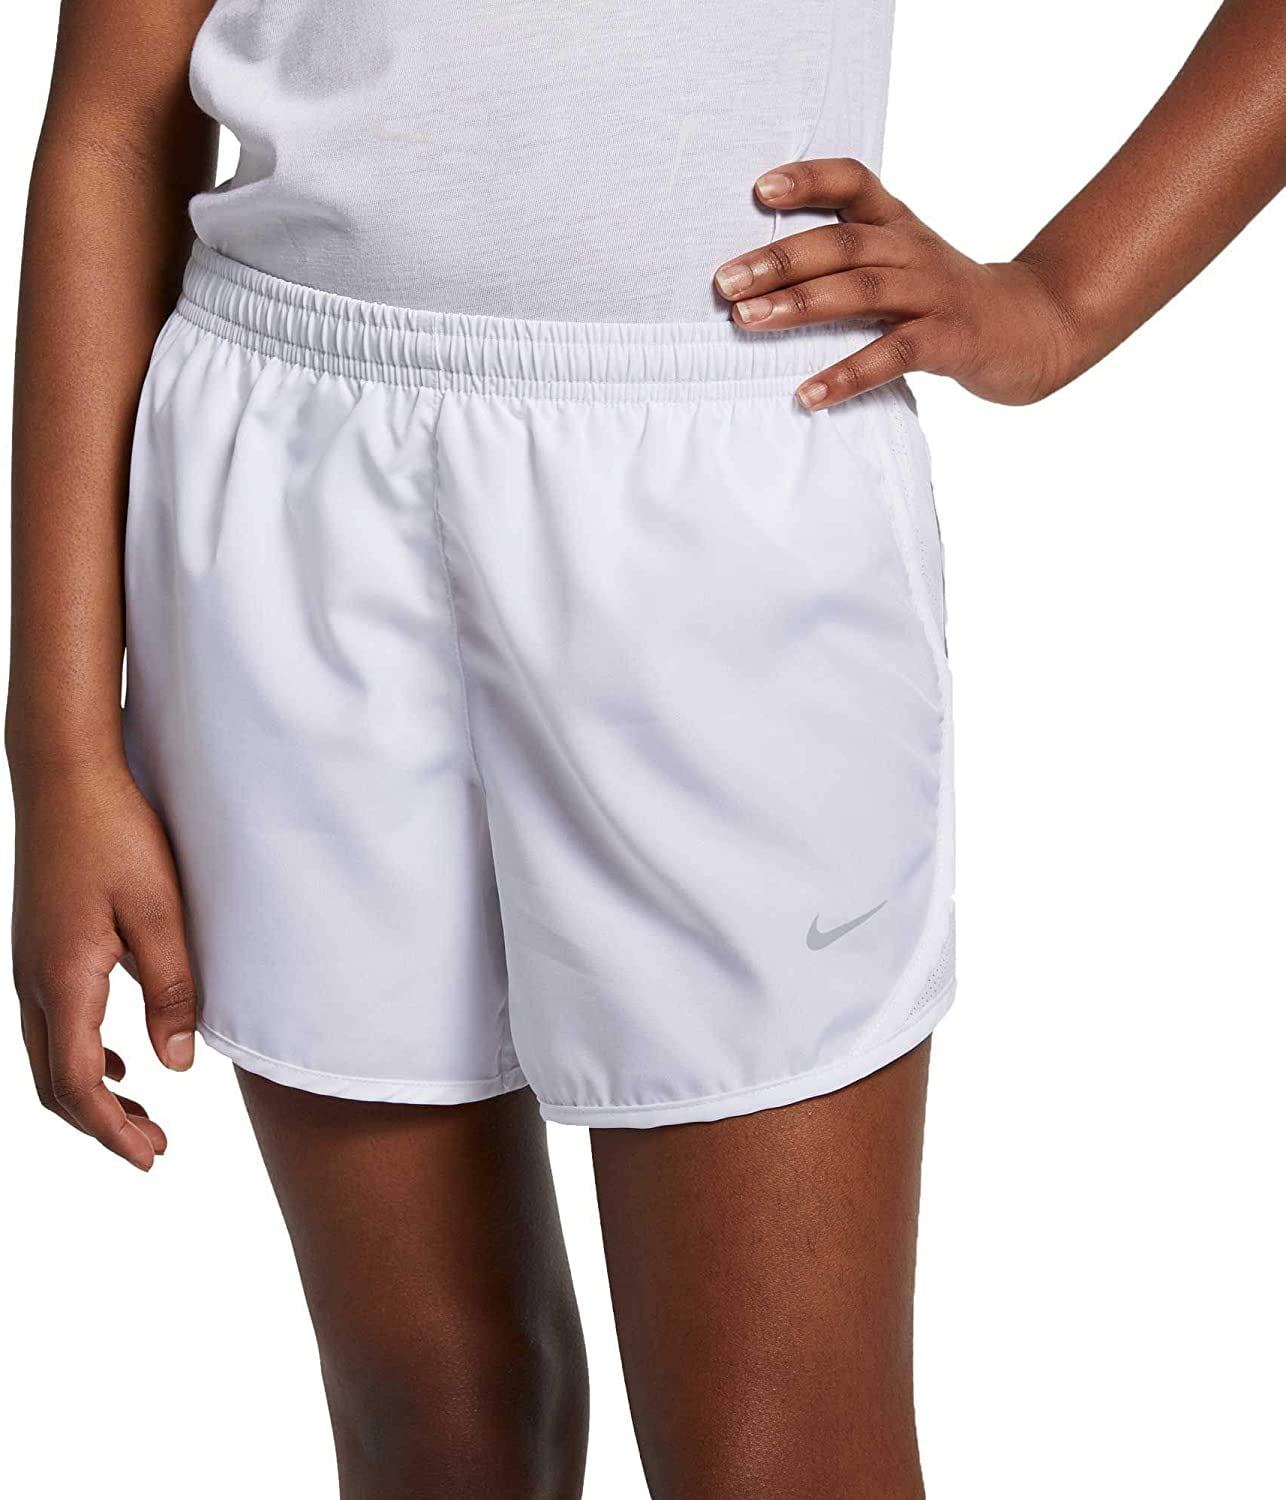 Nike Girls Dry Tempo Running Shorts White X-Small 